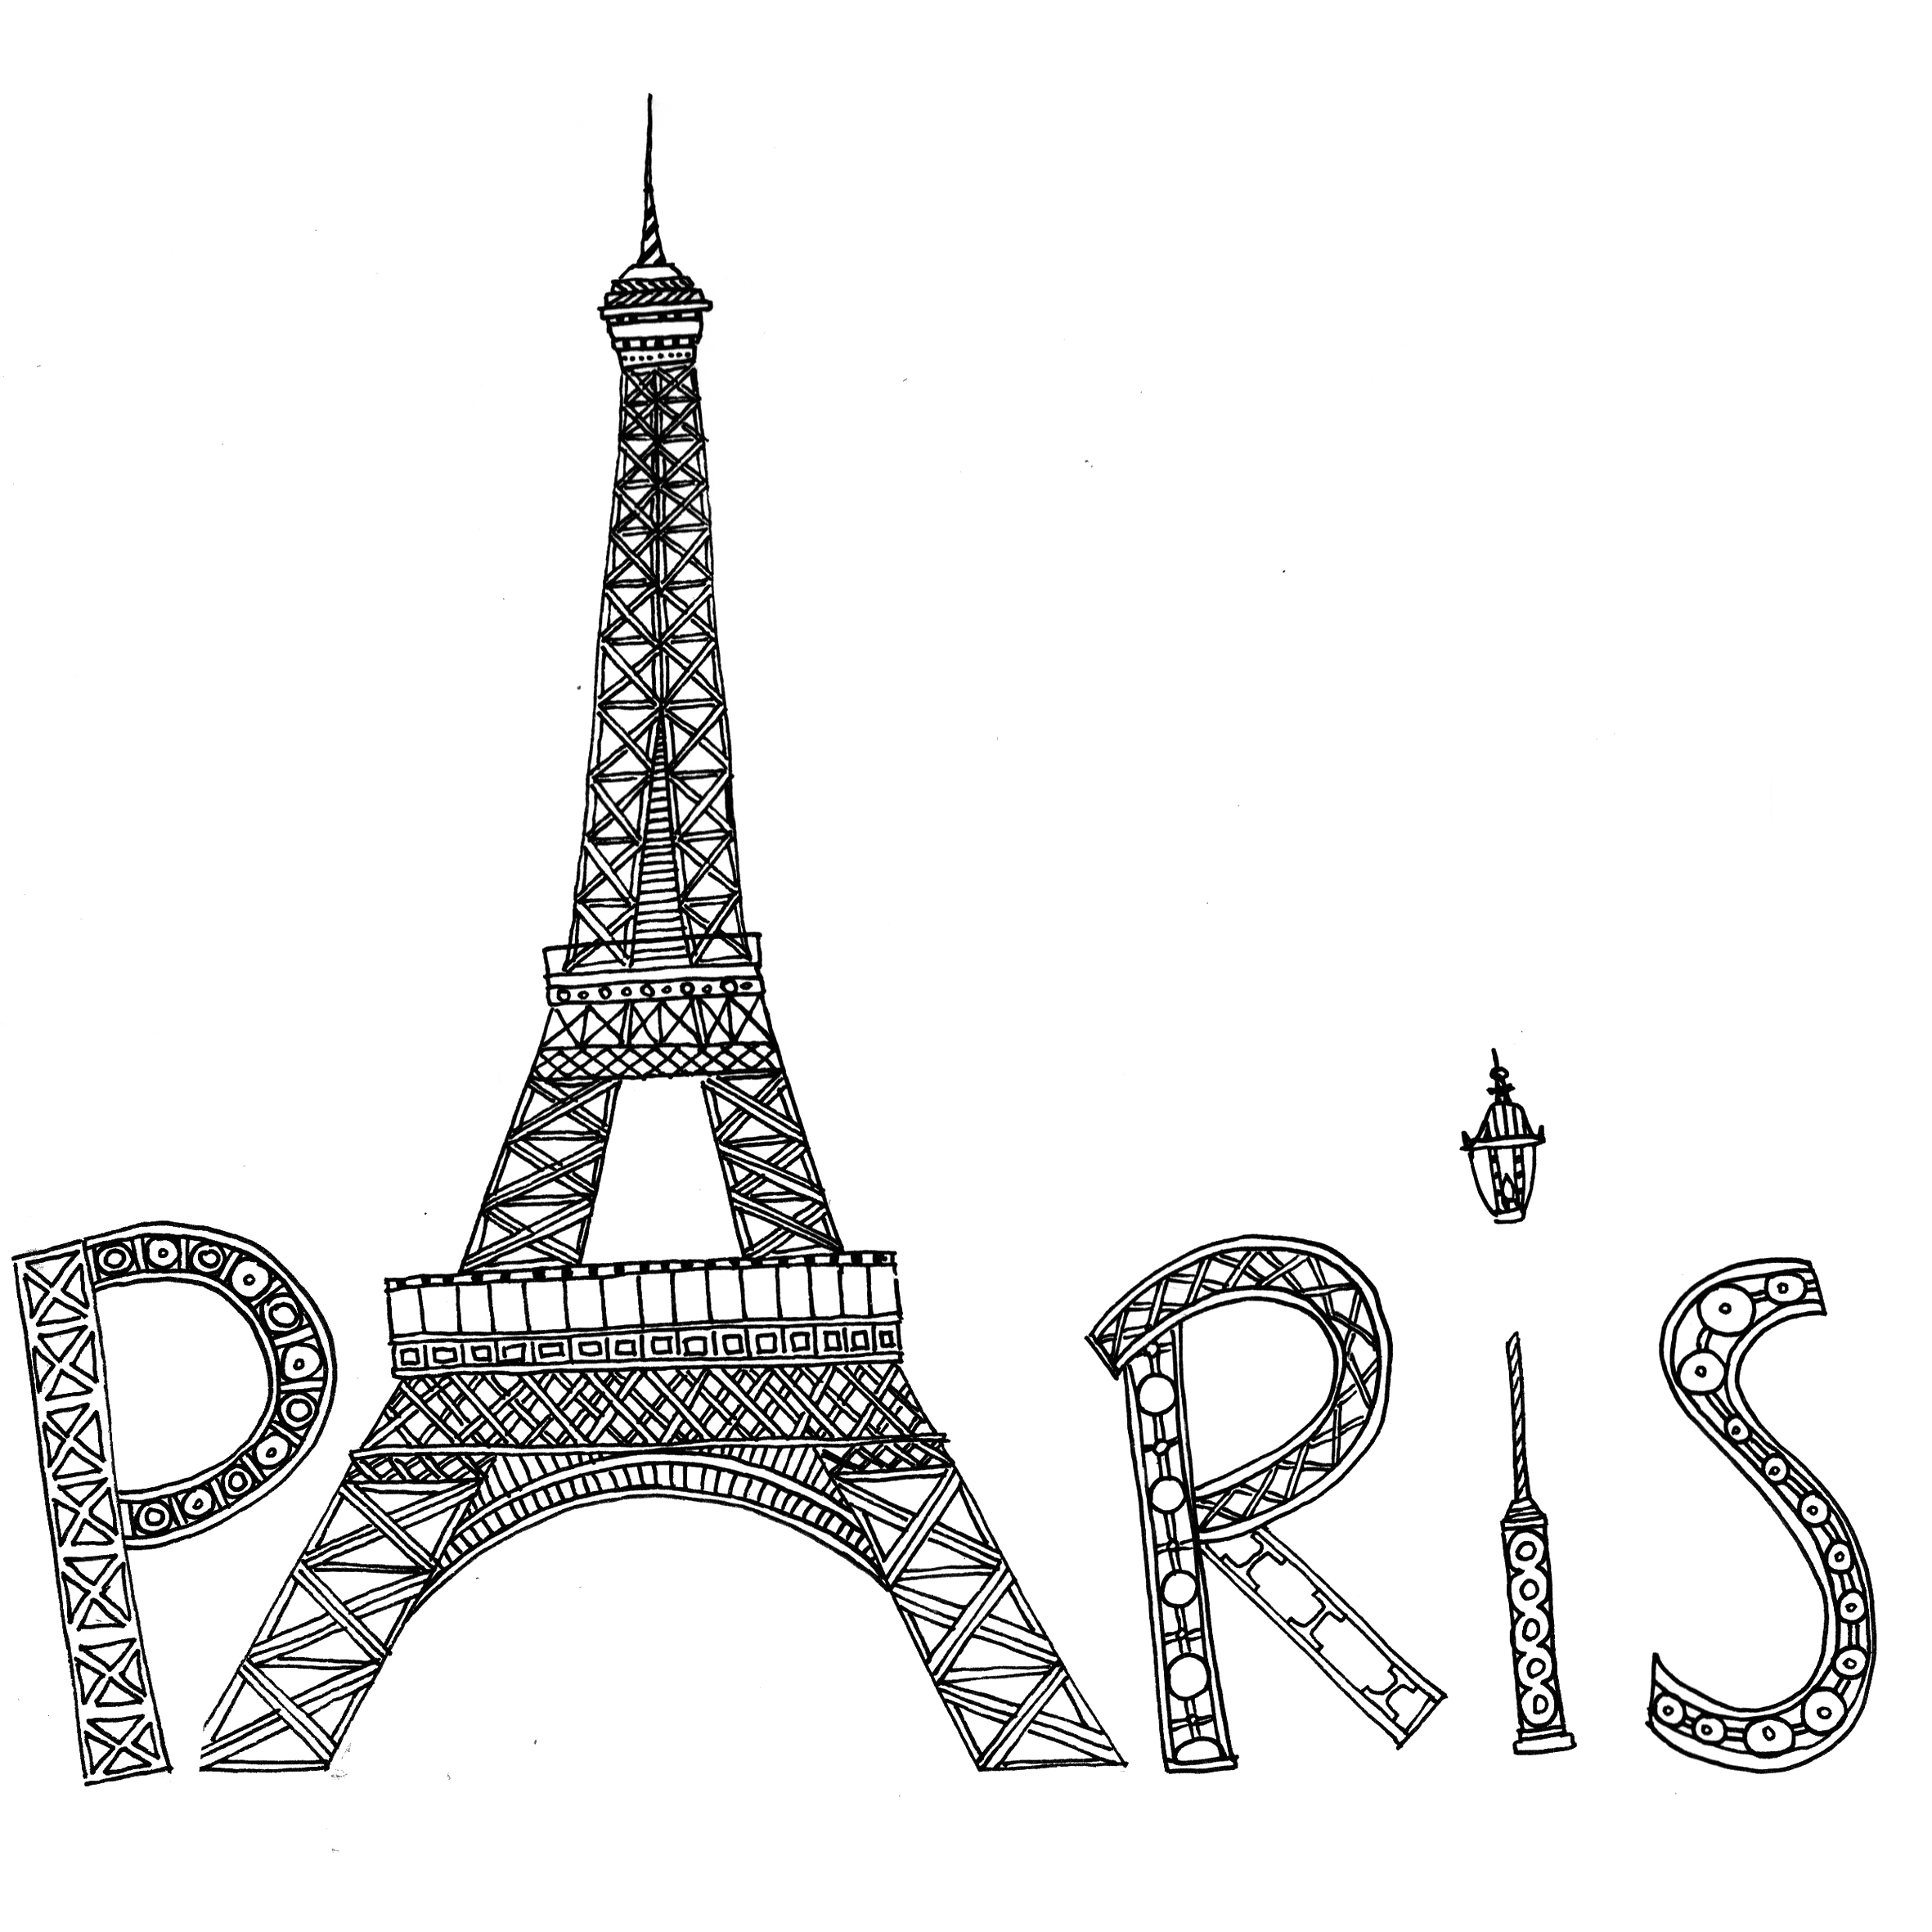 Immagine Trasparente PNG della siluetta della torre Eiffel